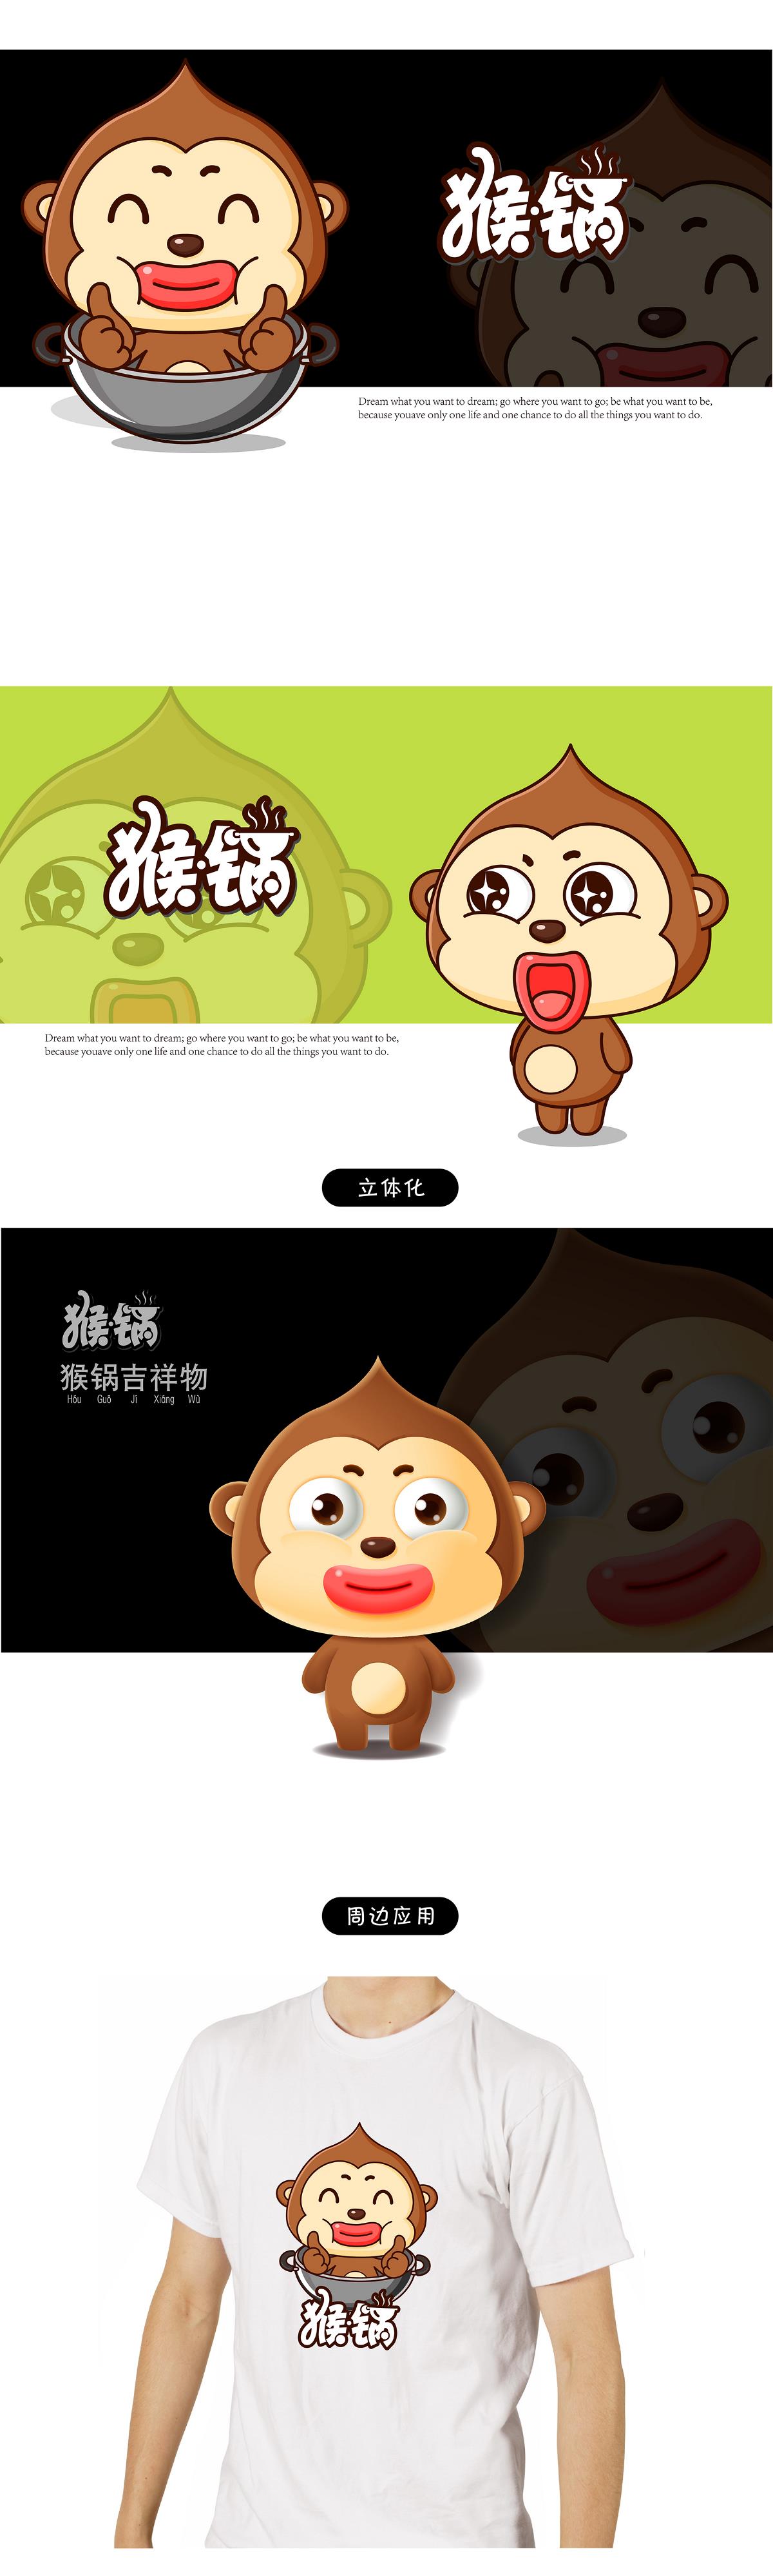 猴锅猴君卡通形象吉祥物设计微信表情gif设计---茁茁猫原创设计